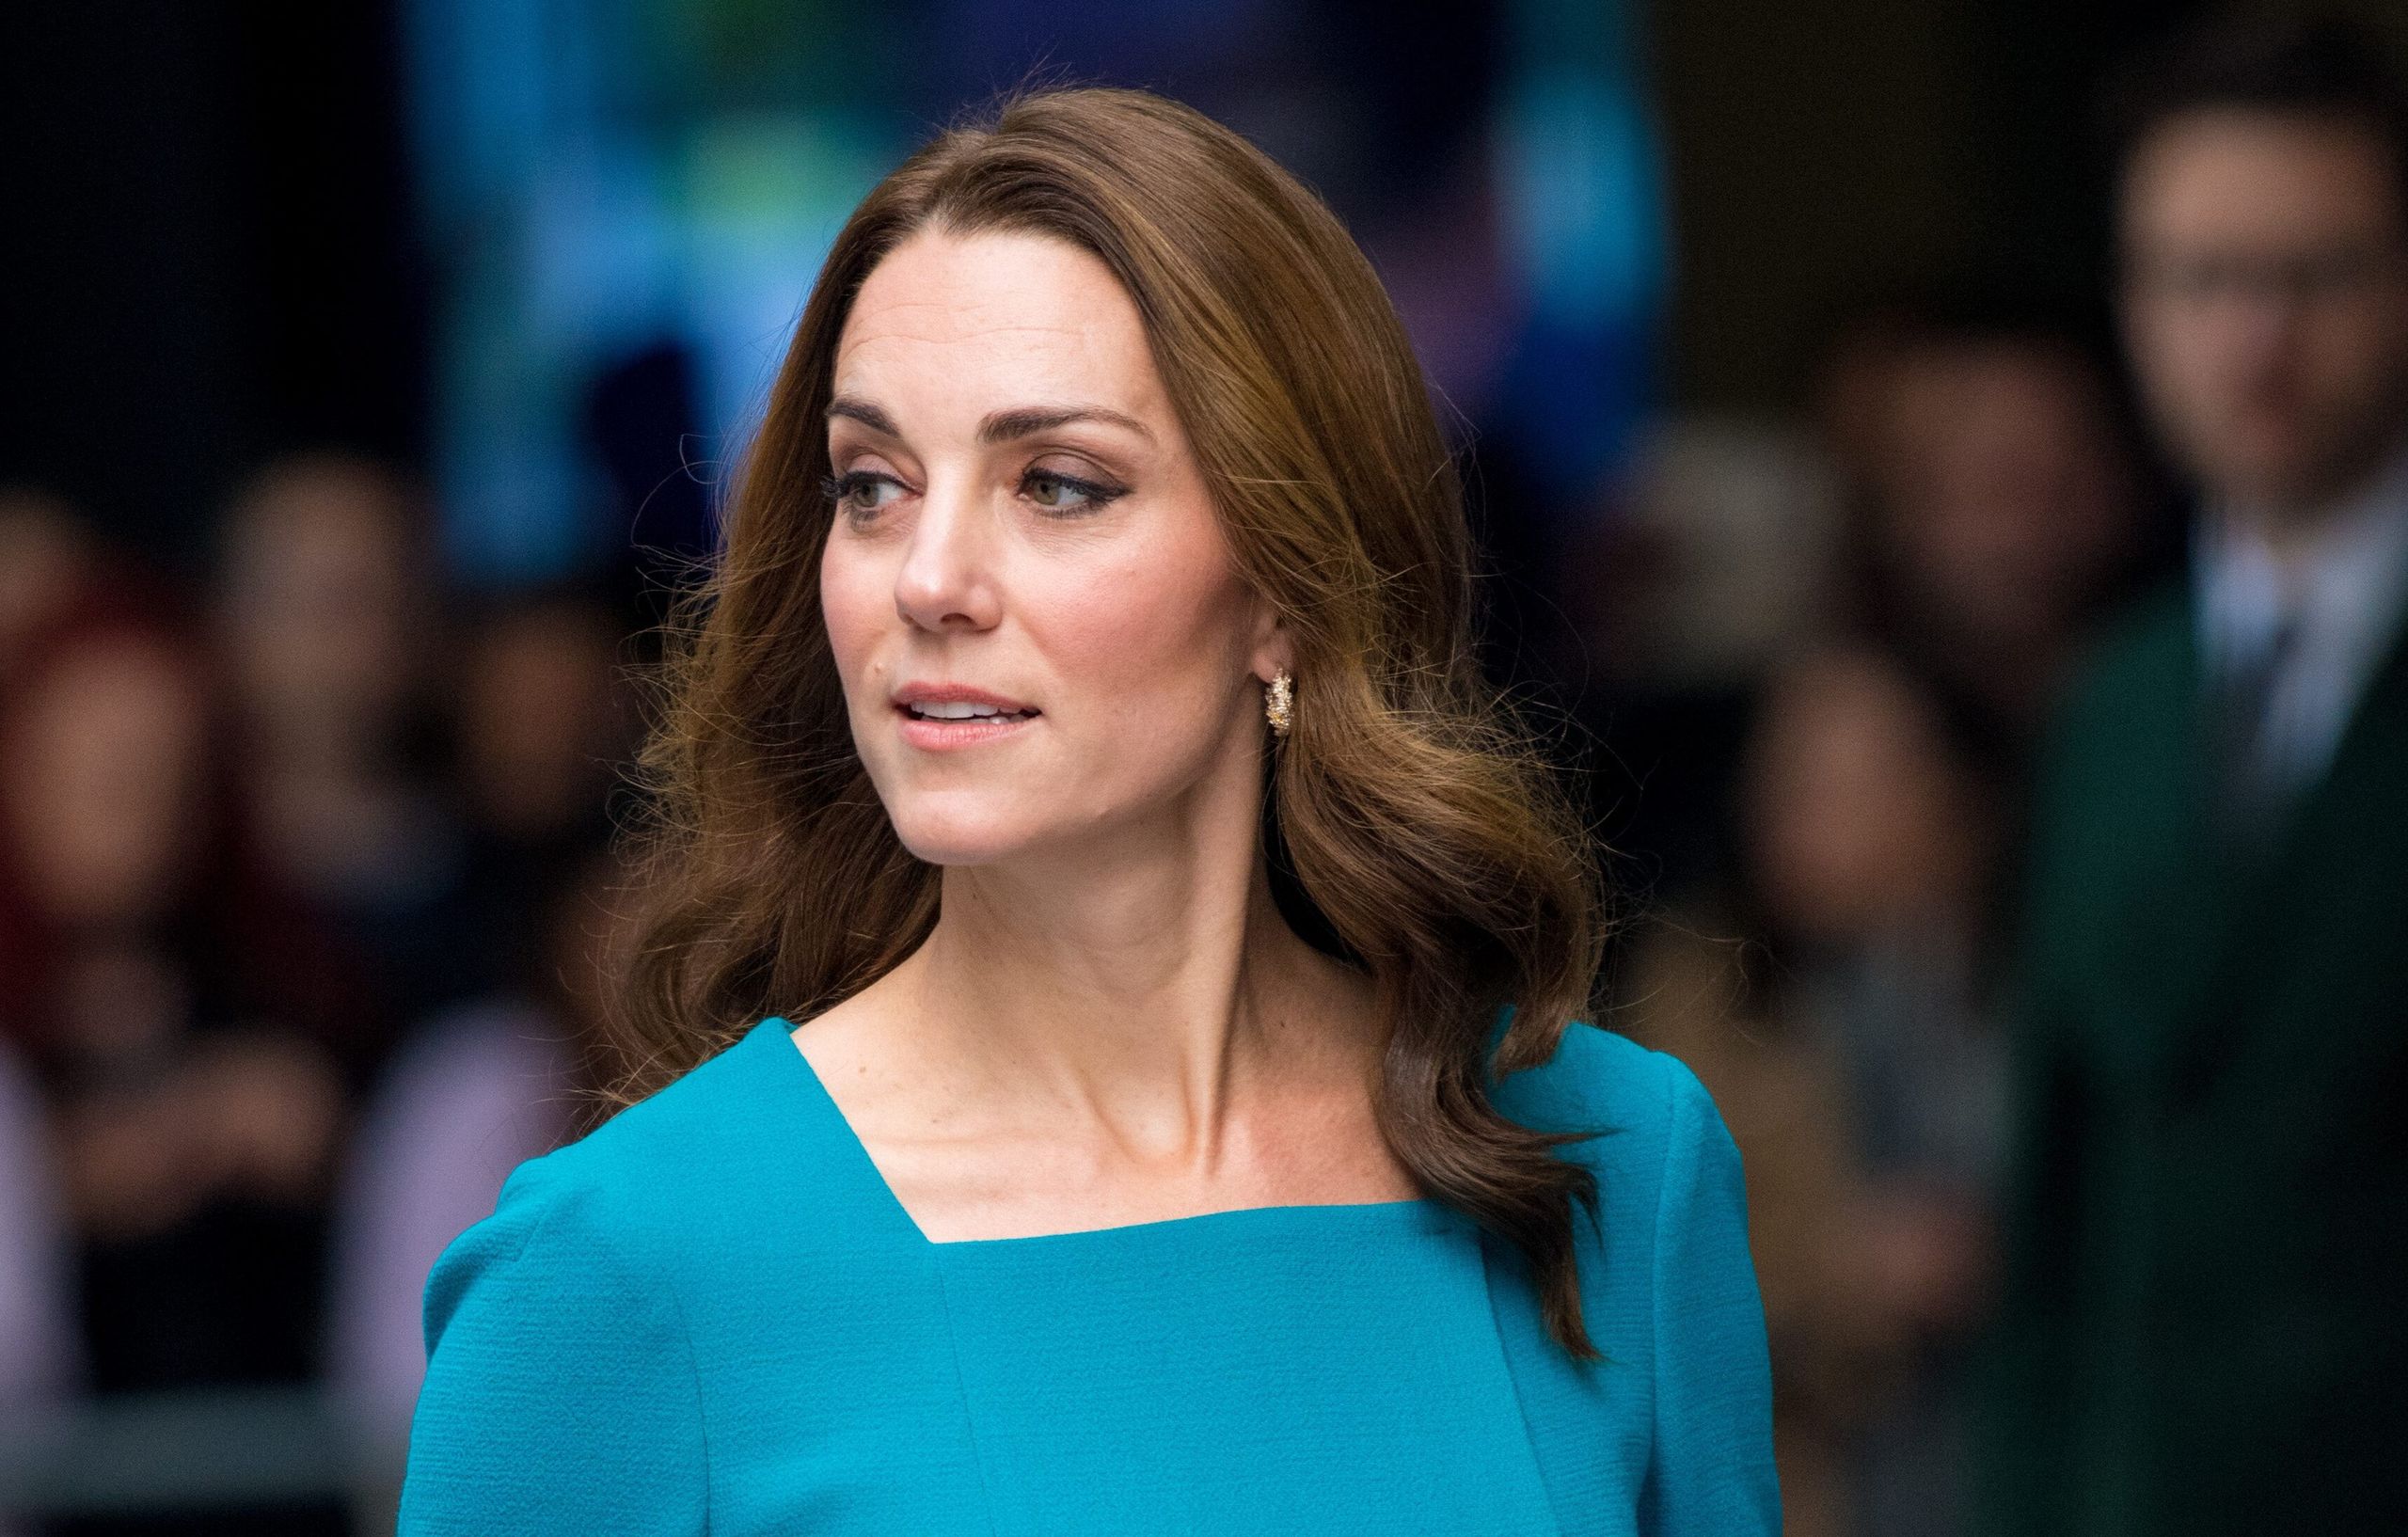 Sale a la luz la verdadera razón del impactante vídeo de Kate Middleton